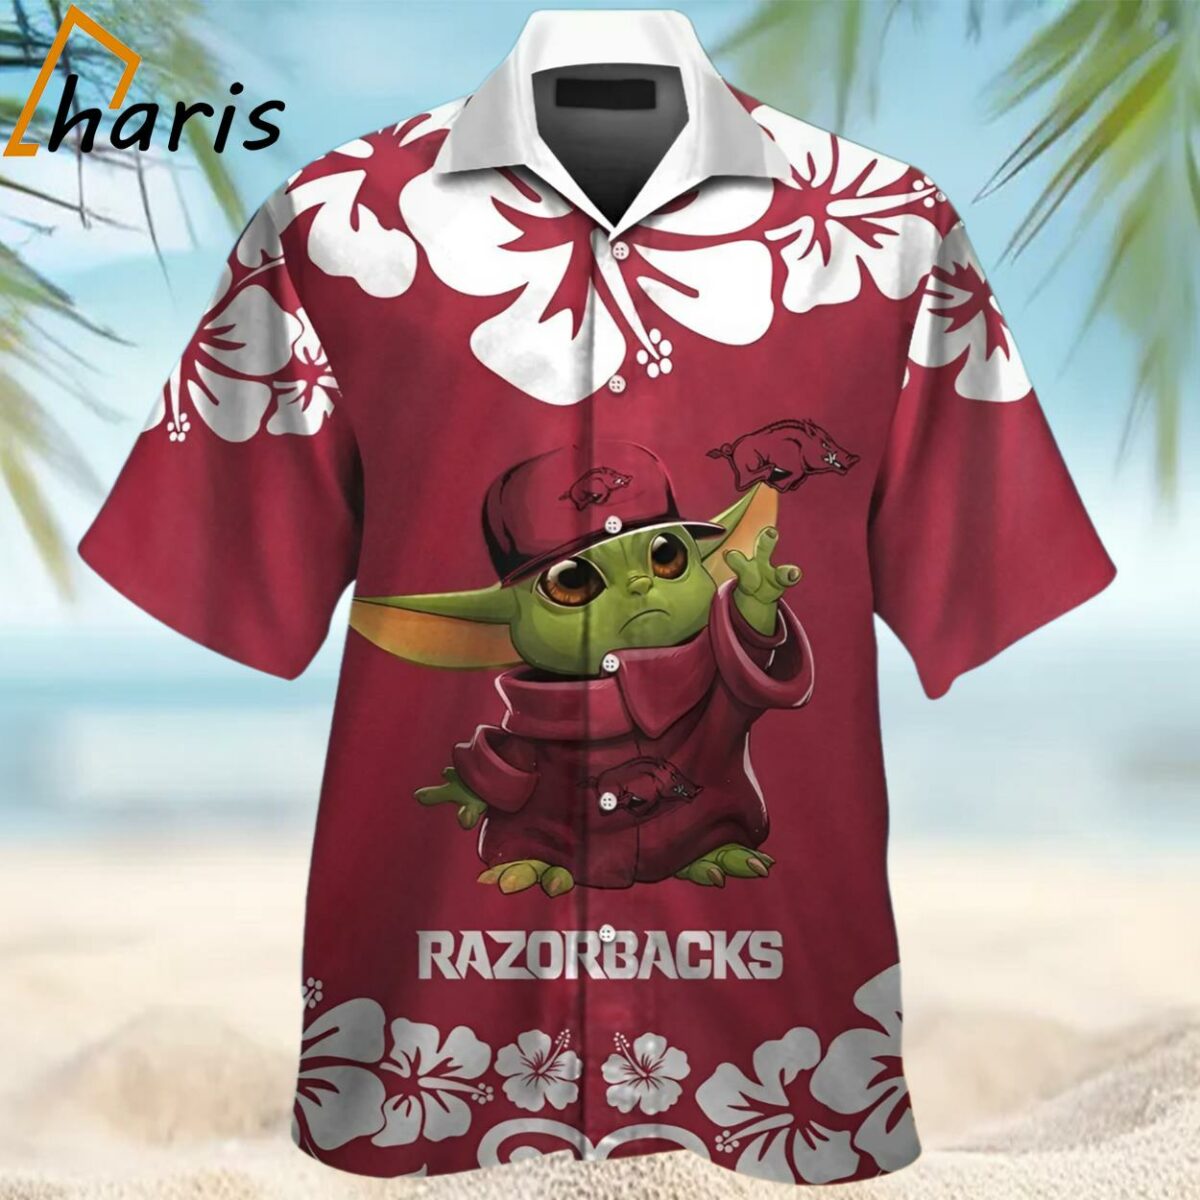 Arkansas Razorbacks Baby Yoda Tropical Hawaiian Shirt 1 1